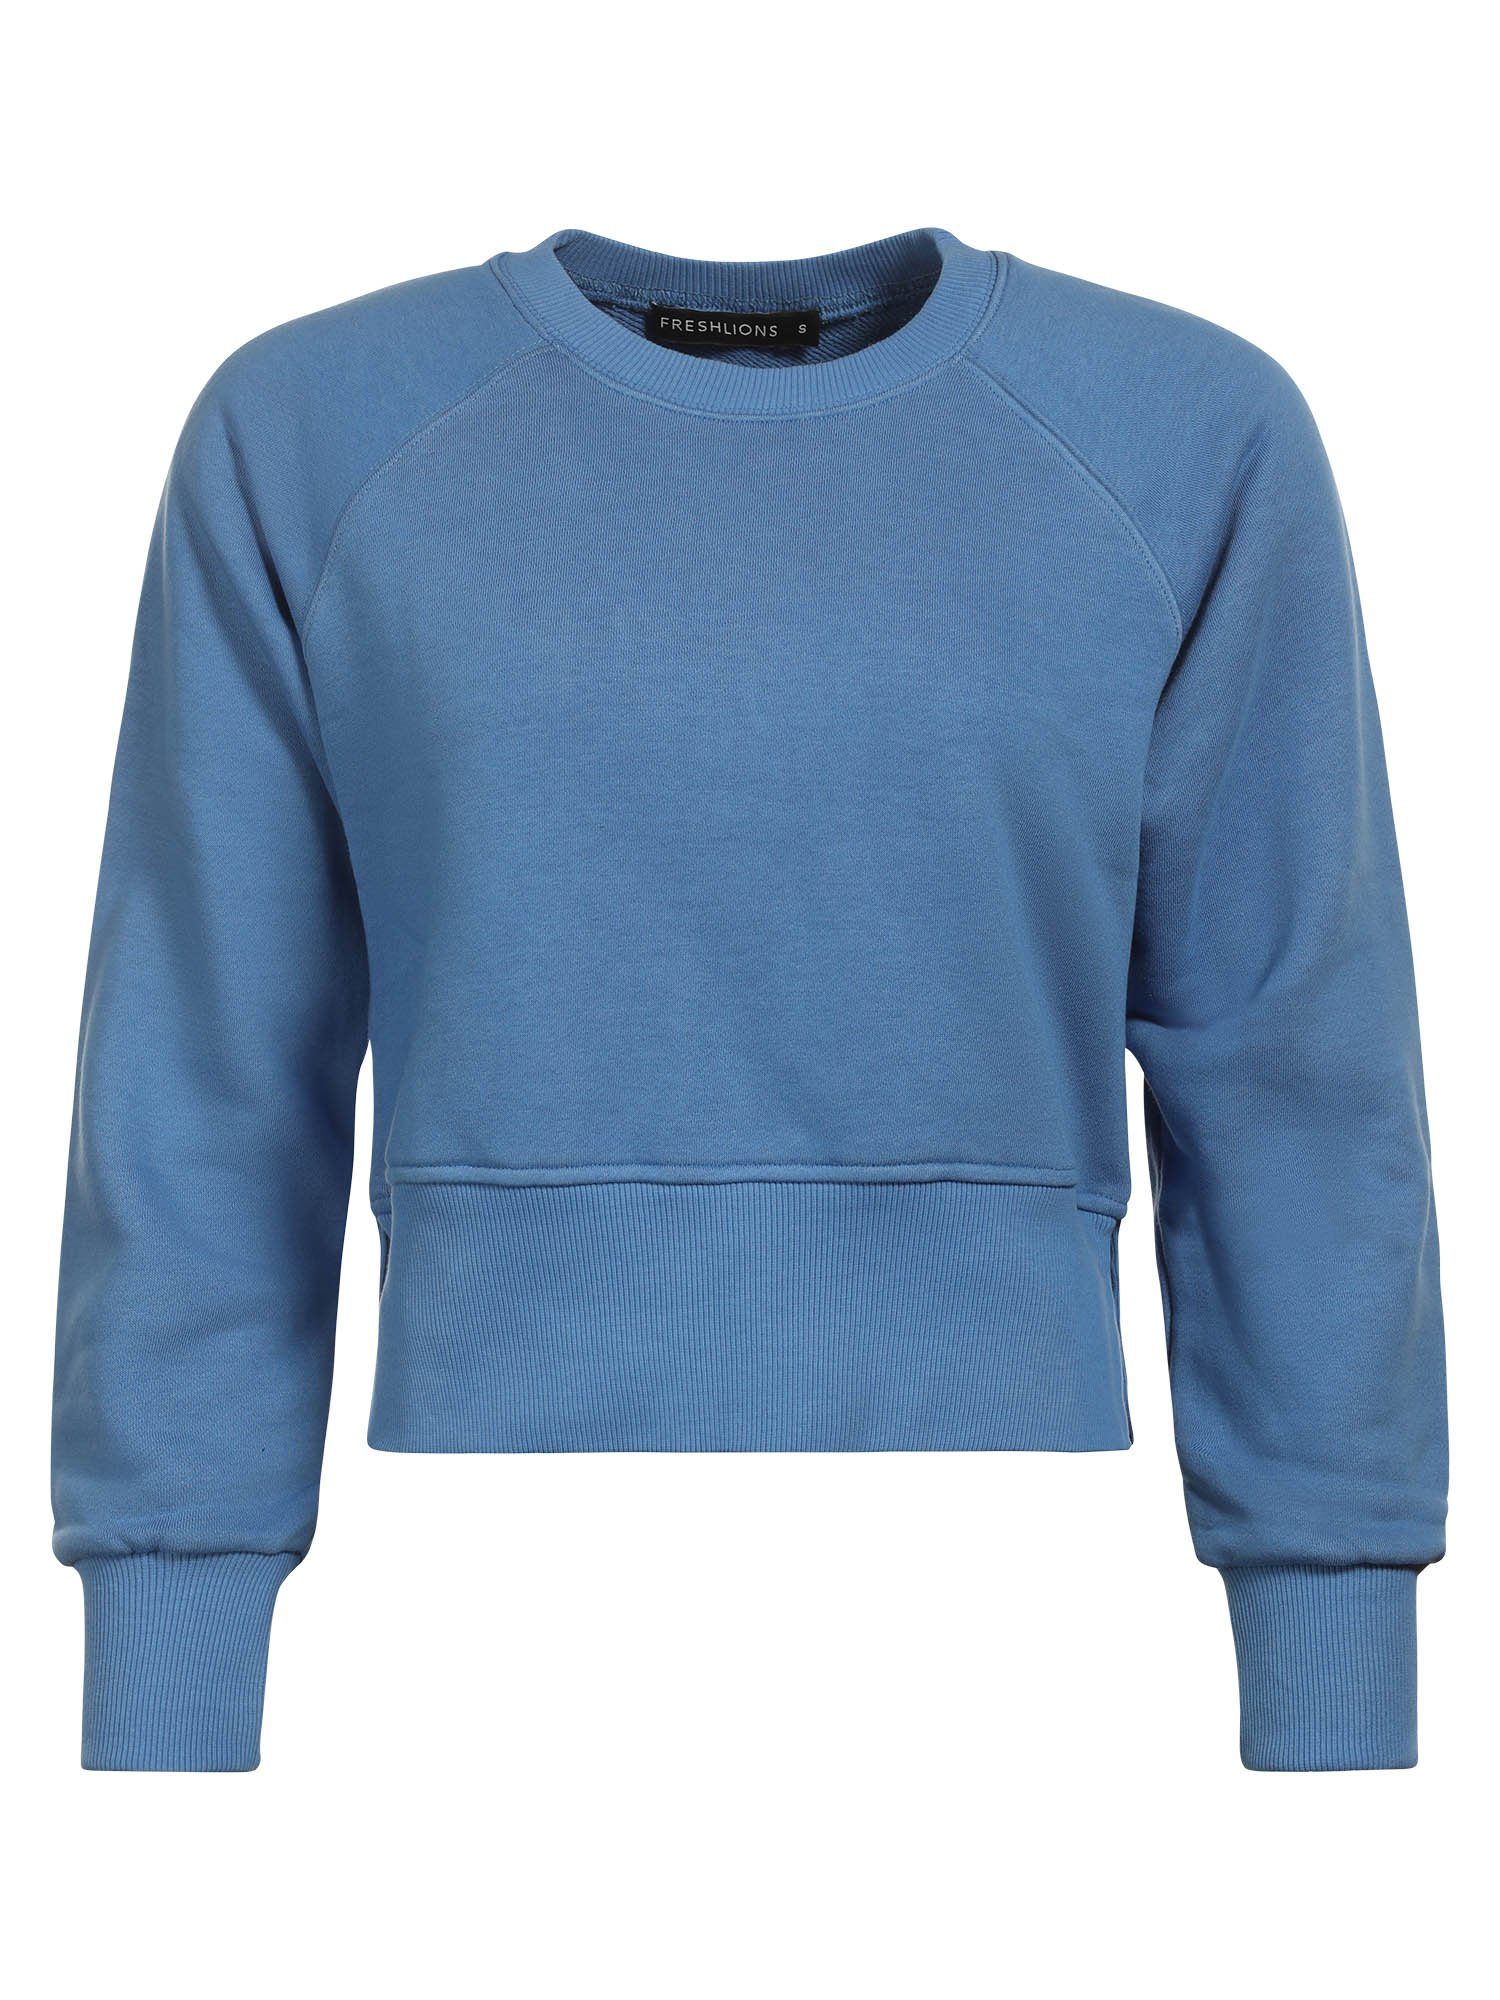 Sweater Blau Freshlions Sweatshirt Freshlions